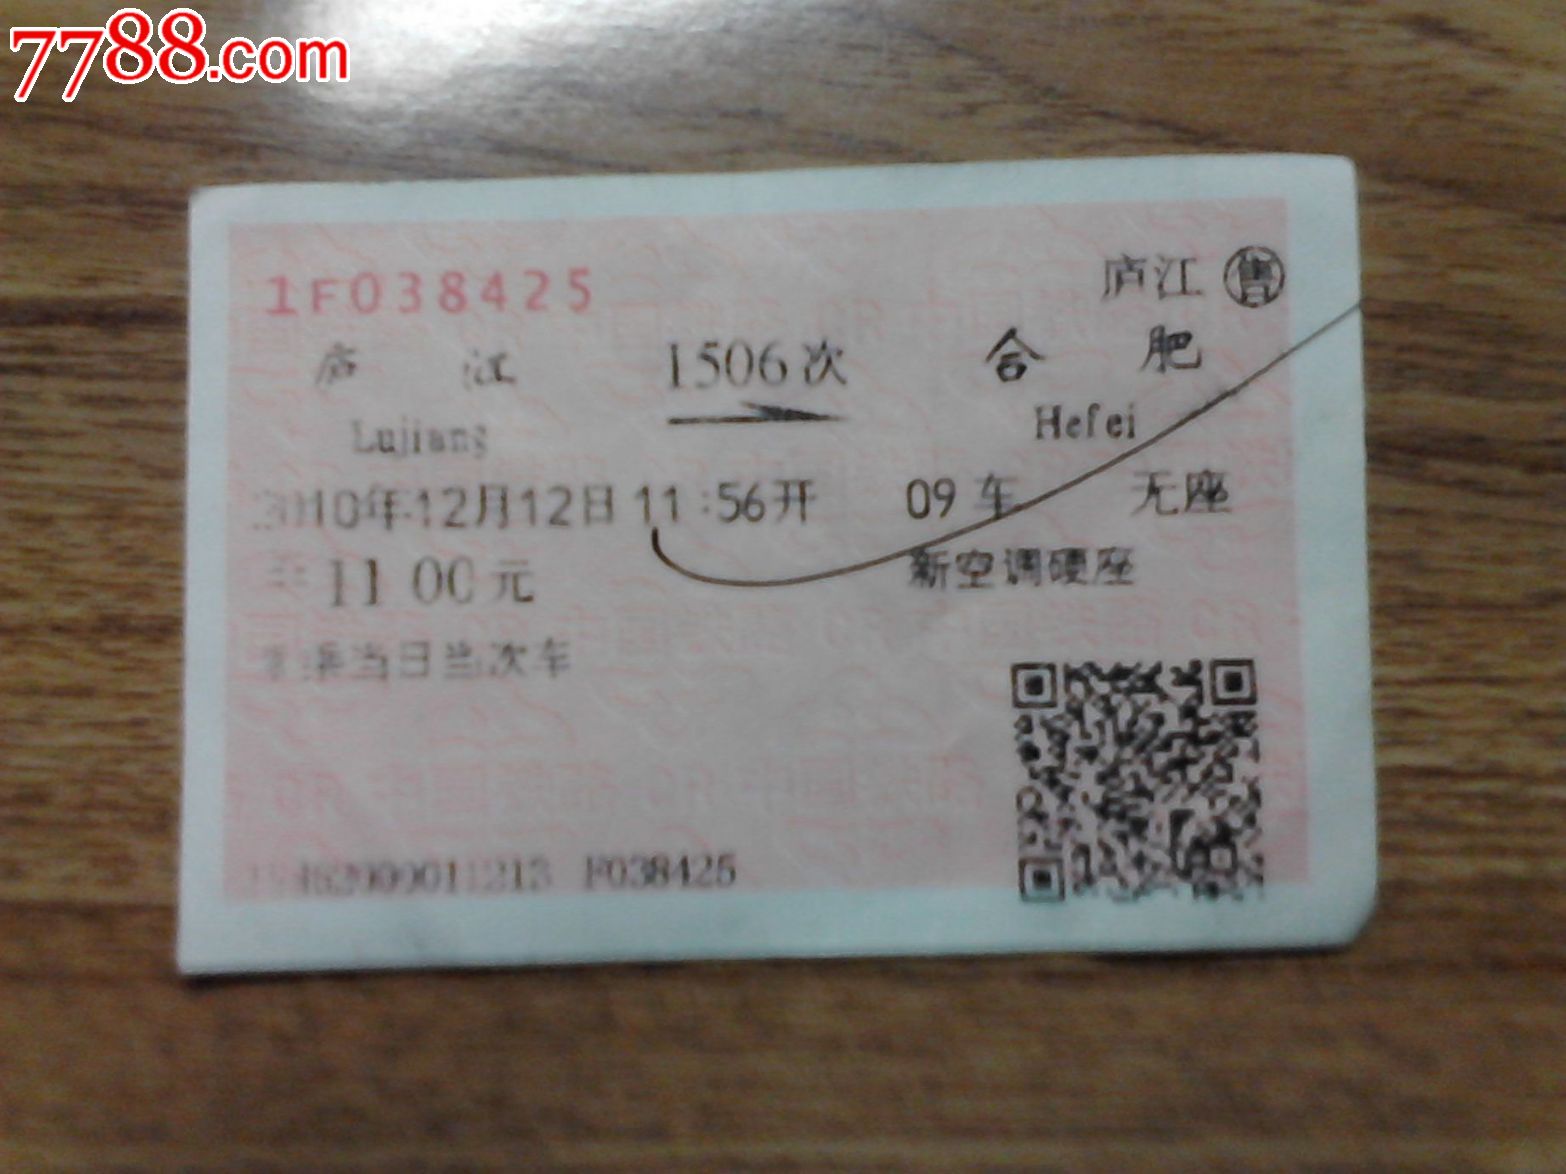 庐江--合肥(1506次),火车票,普通火车票,21世纪